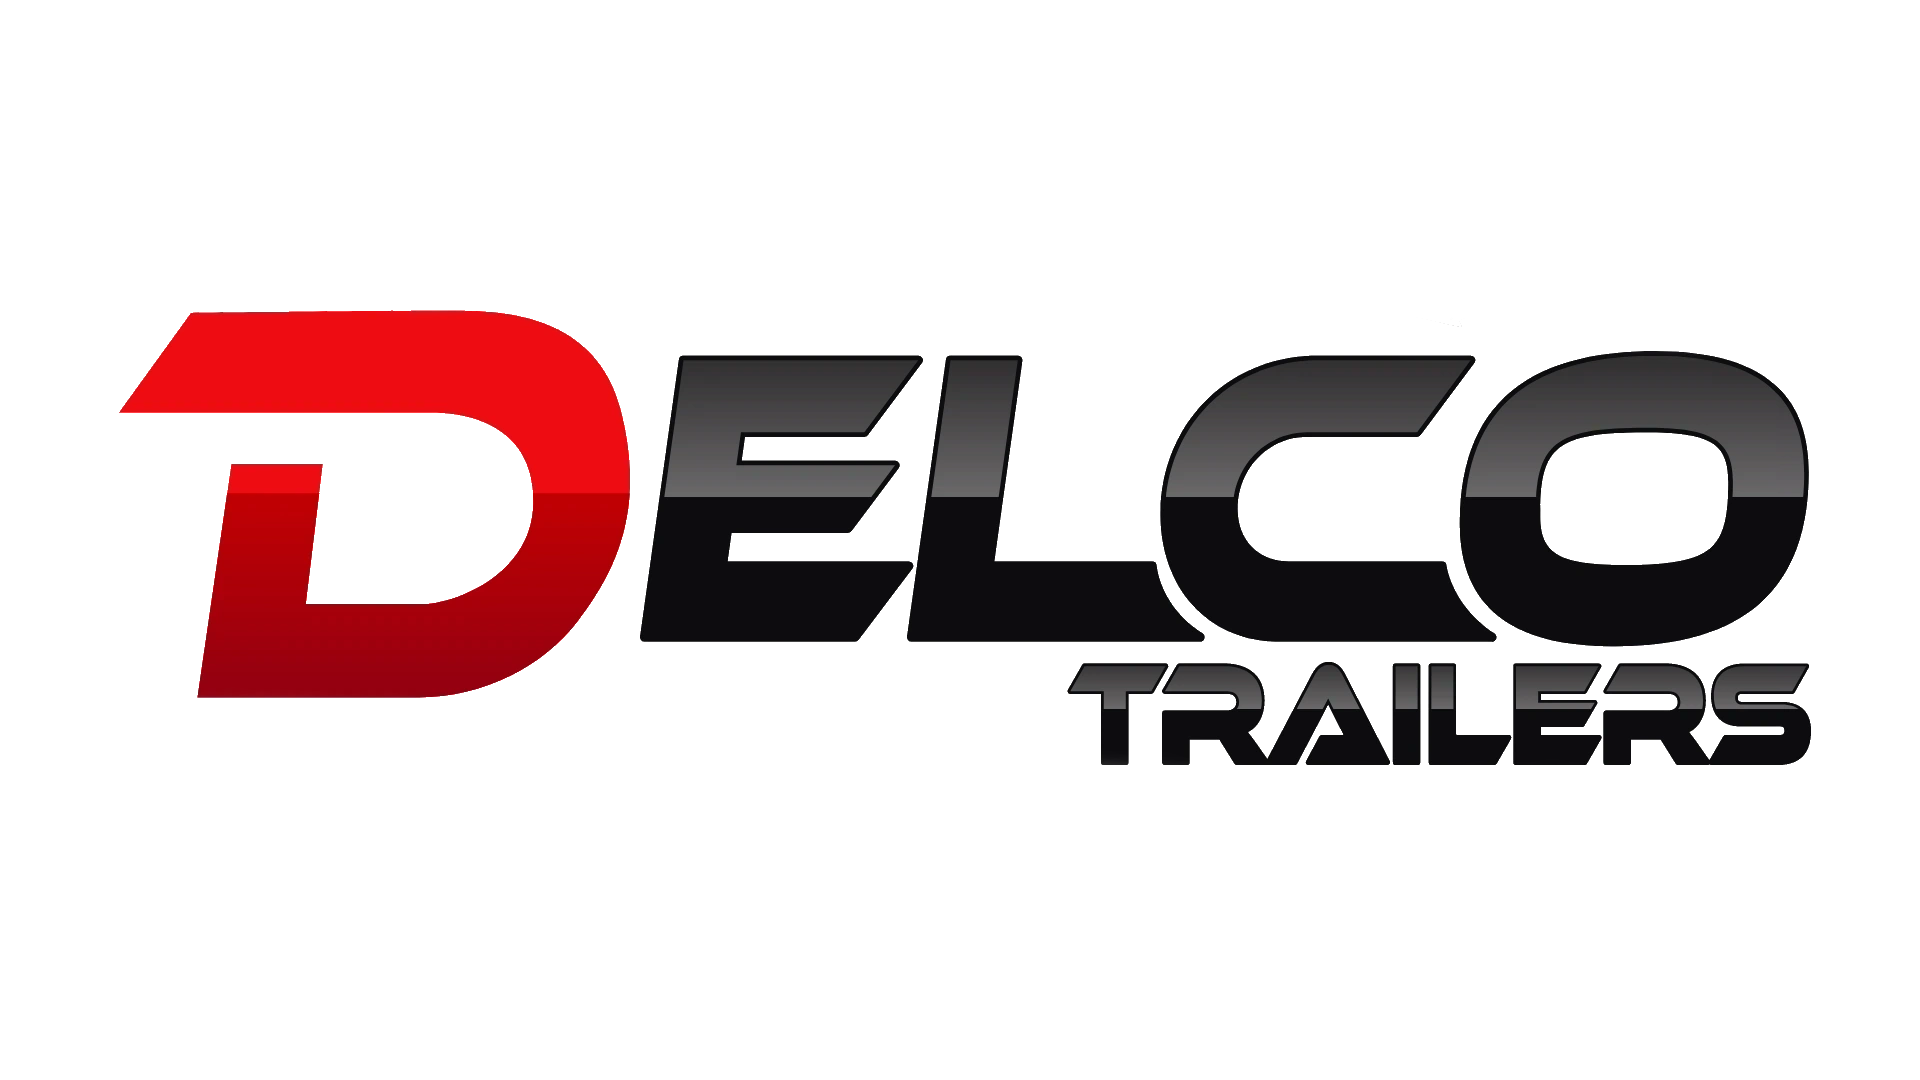 Delco Trailers